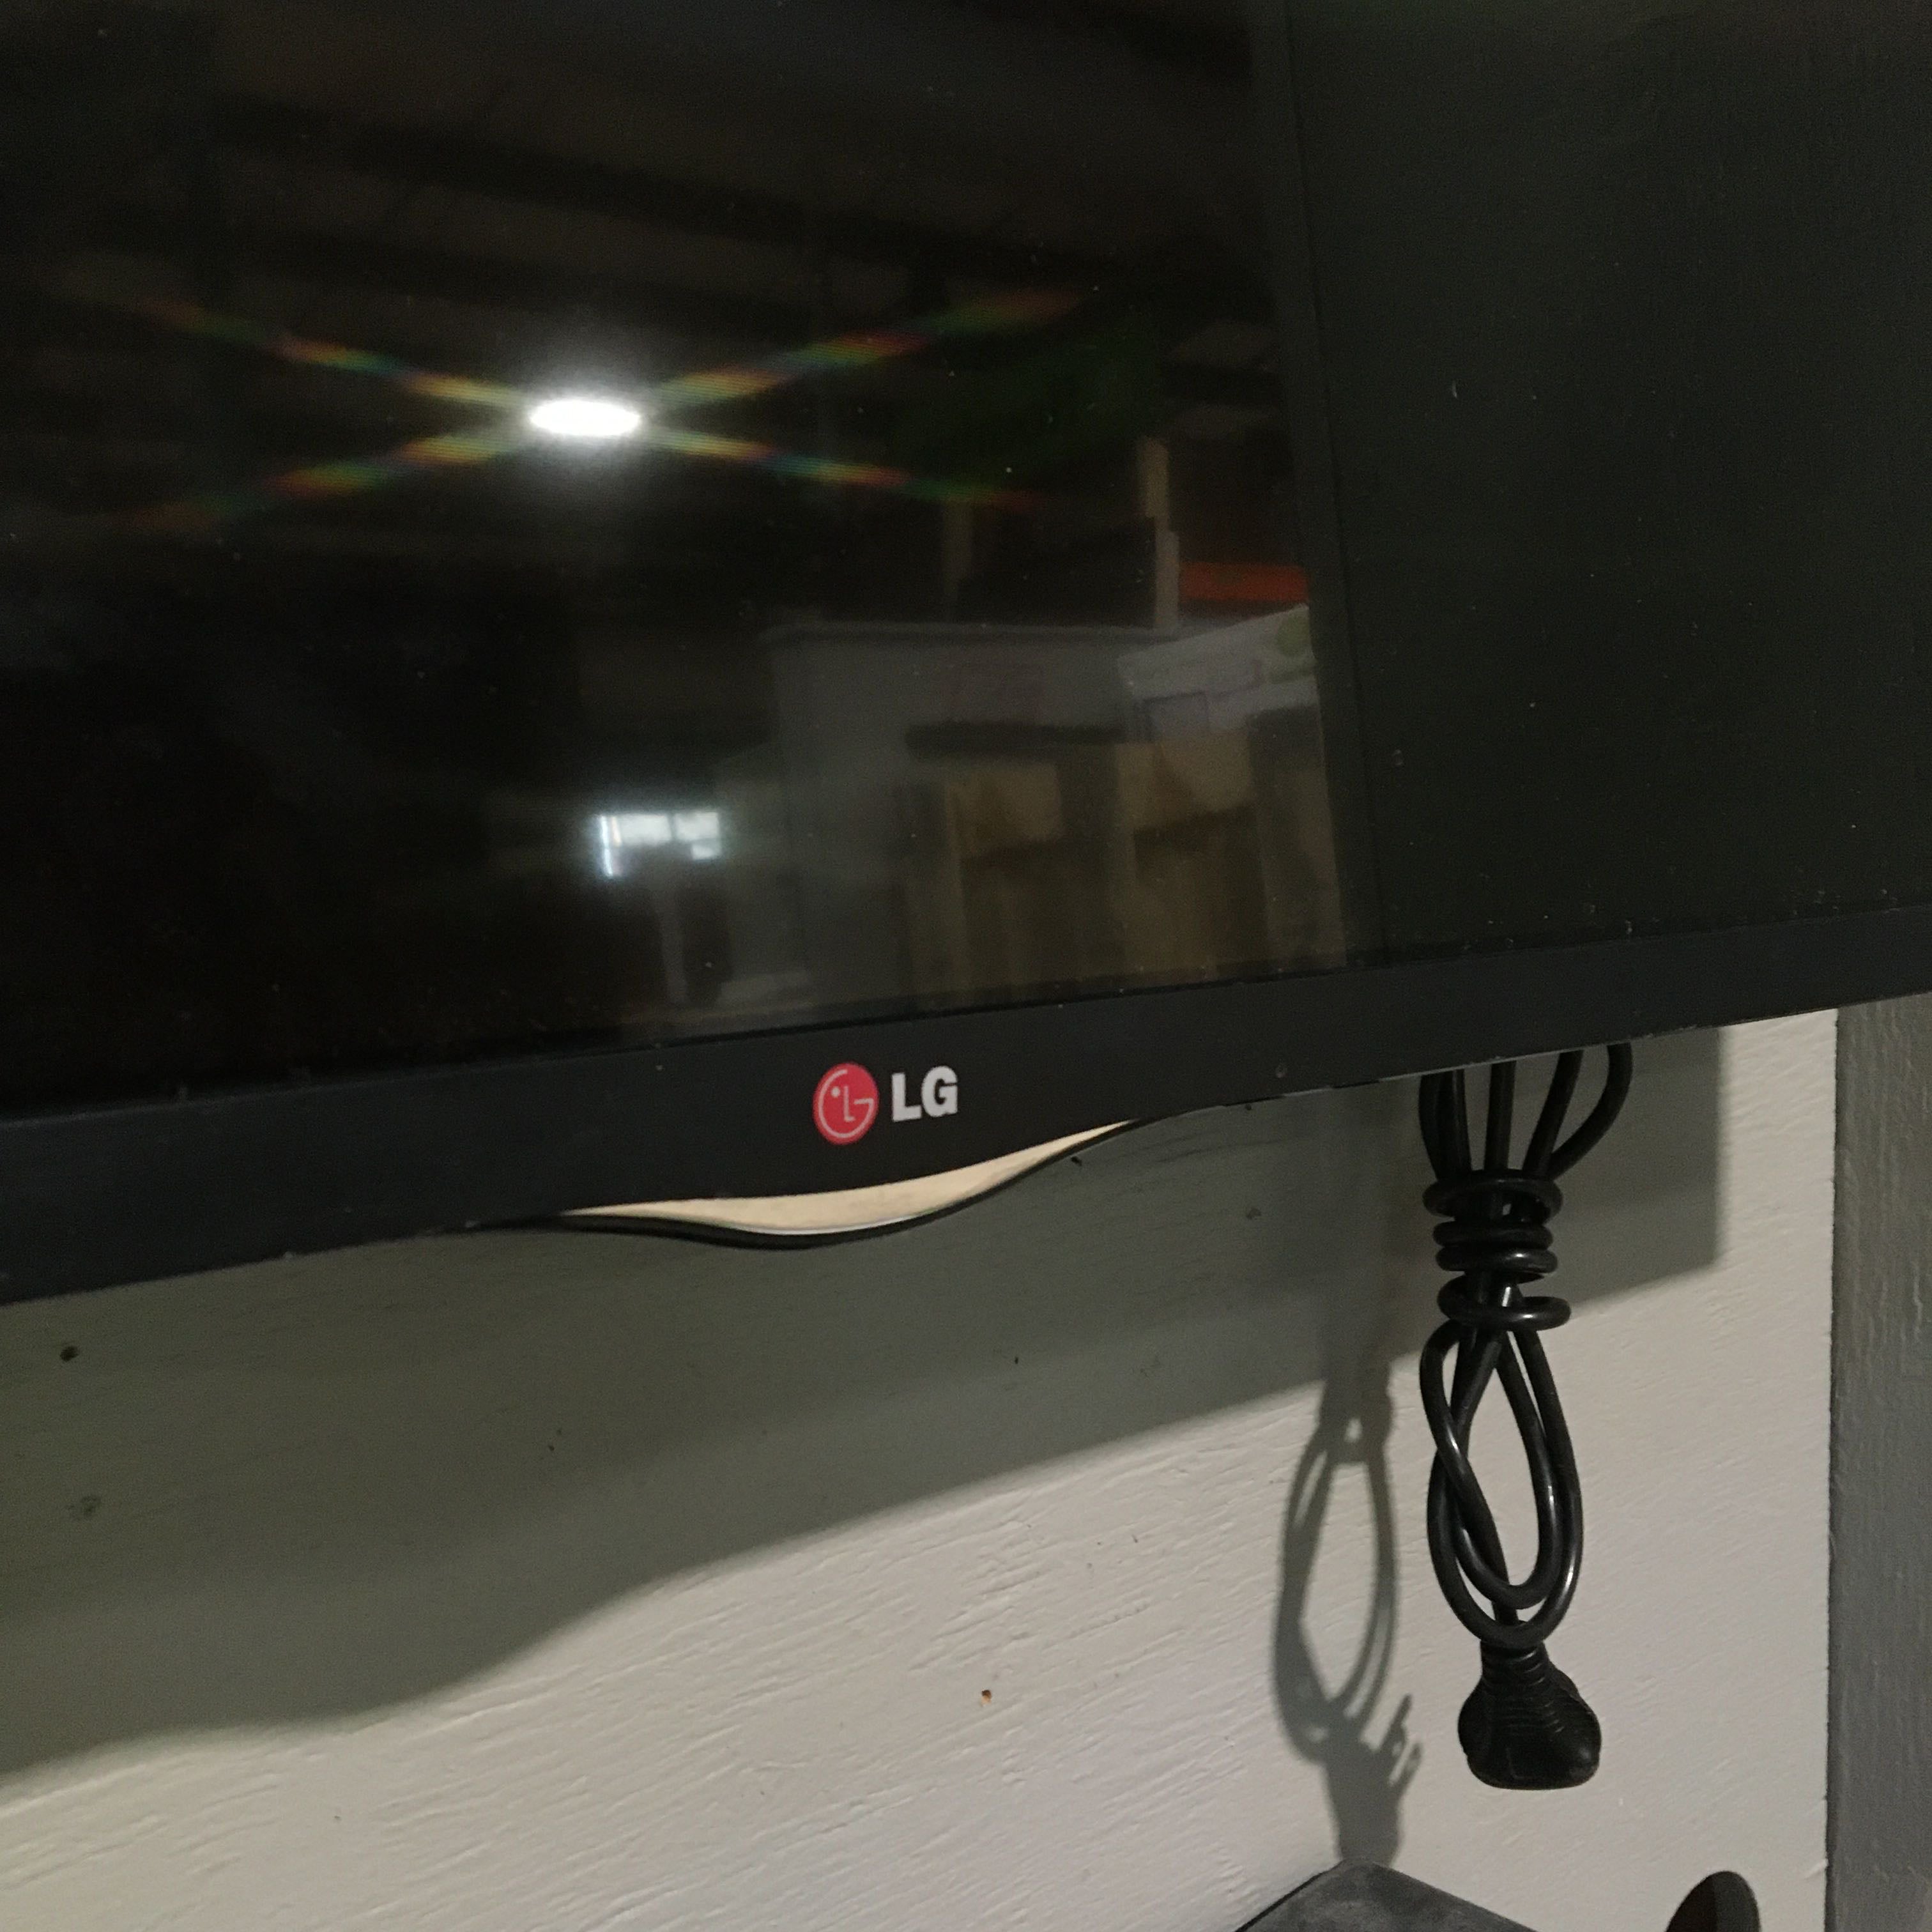 42" LG 1080p Smart LED TV